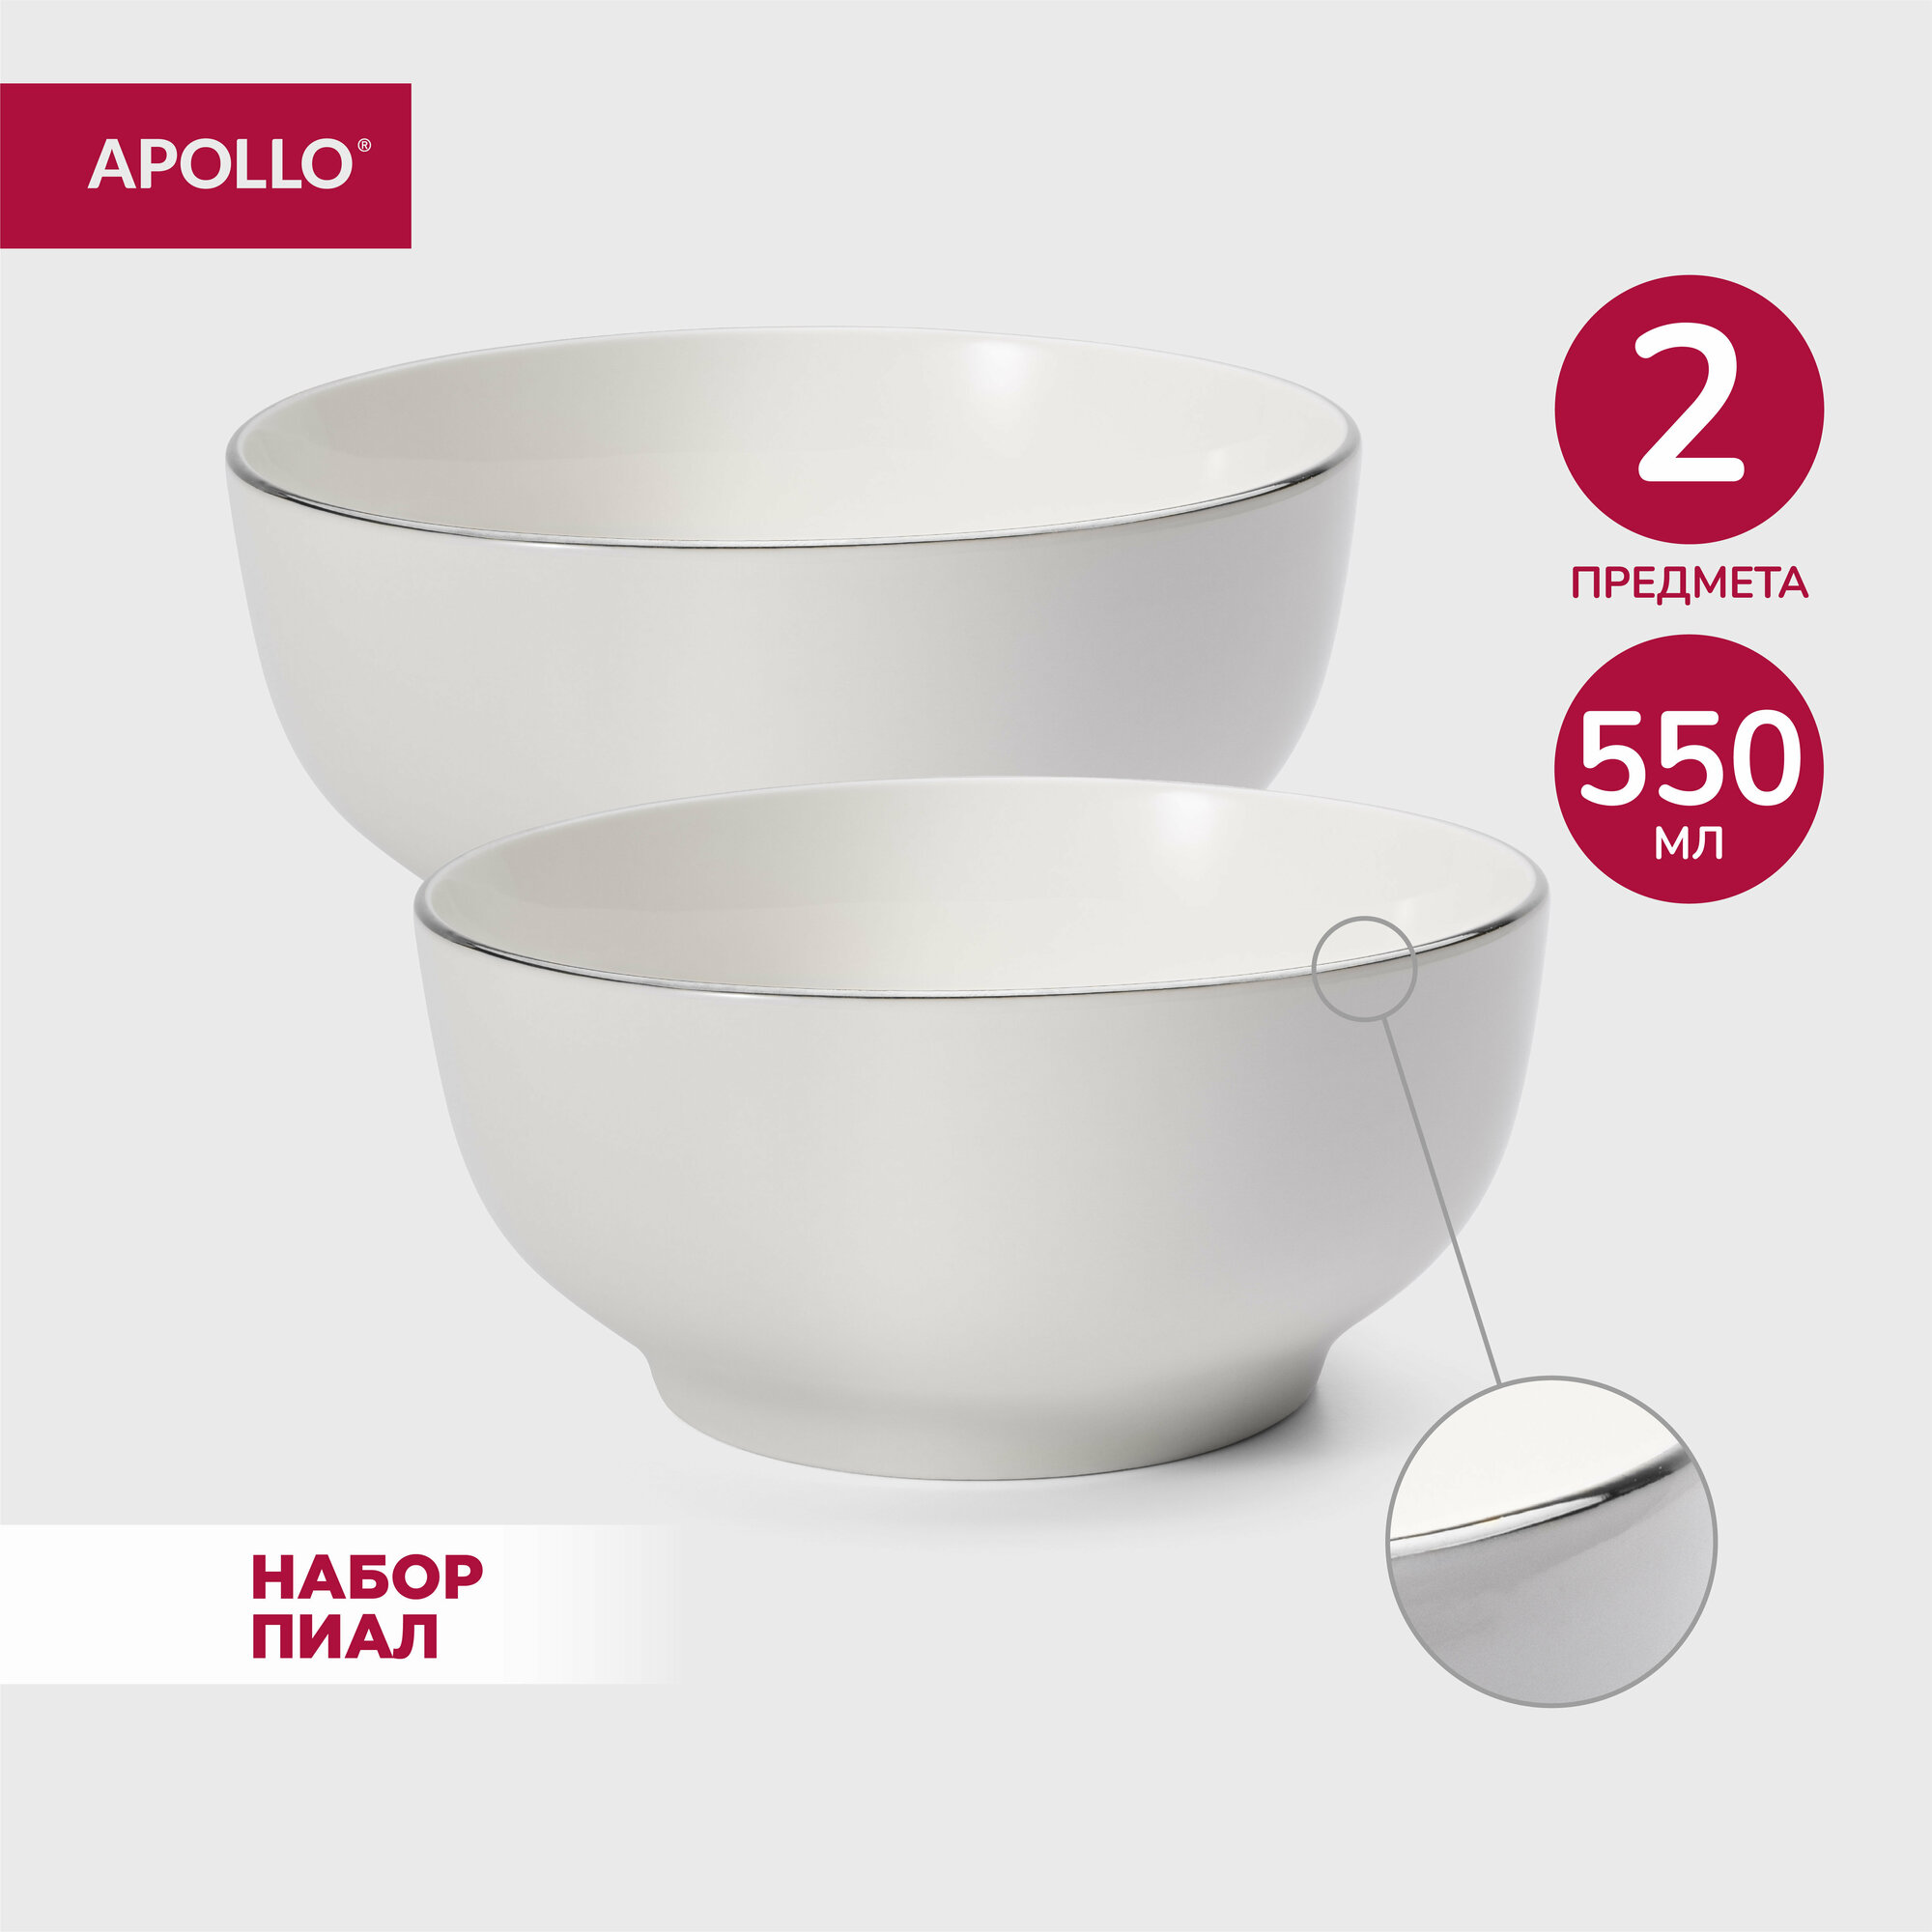 Тарелка глубокая суповая из фарфора набор обеденных тарелок салатник для сервировки фарфоровая посуда Apollo 